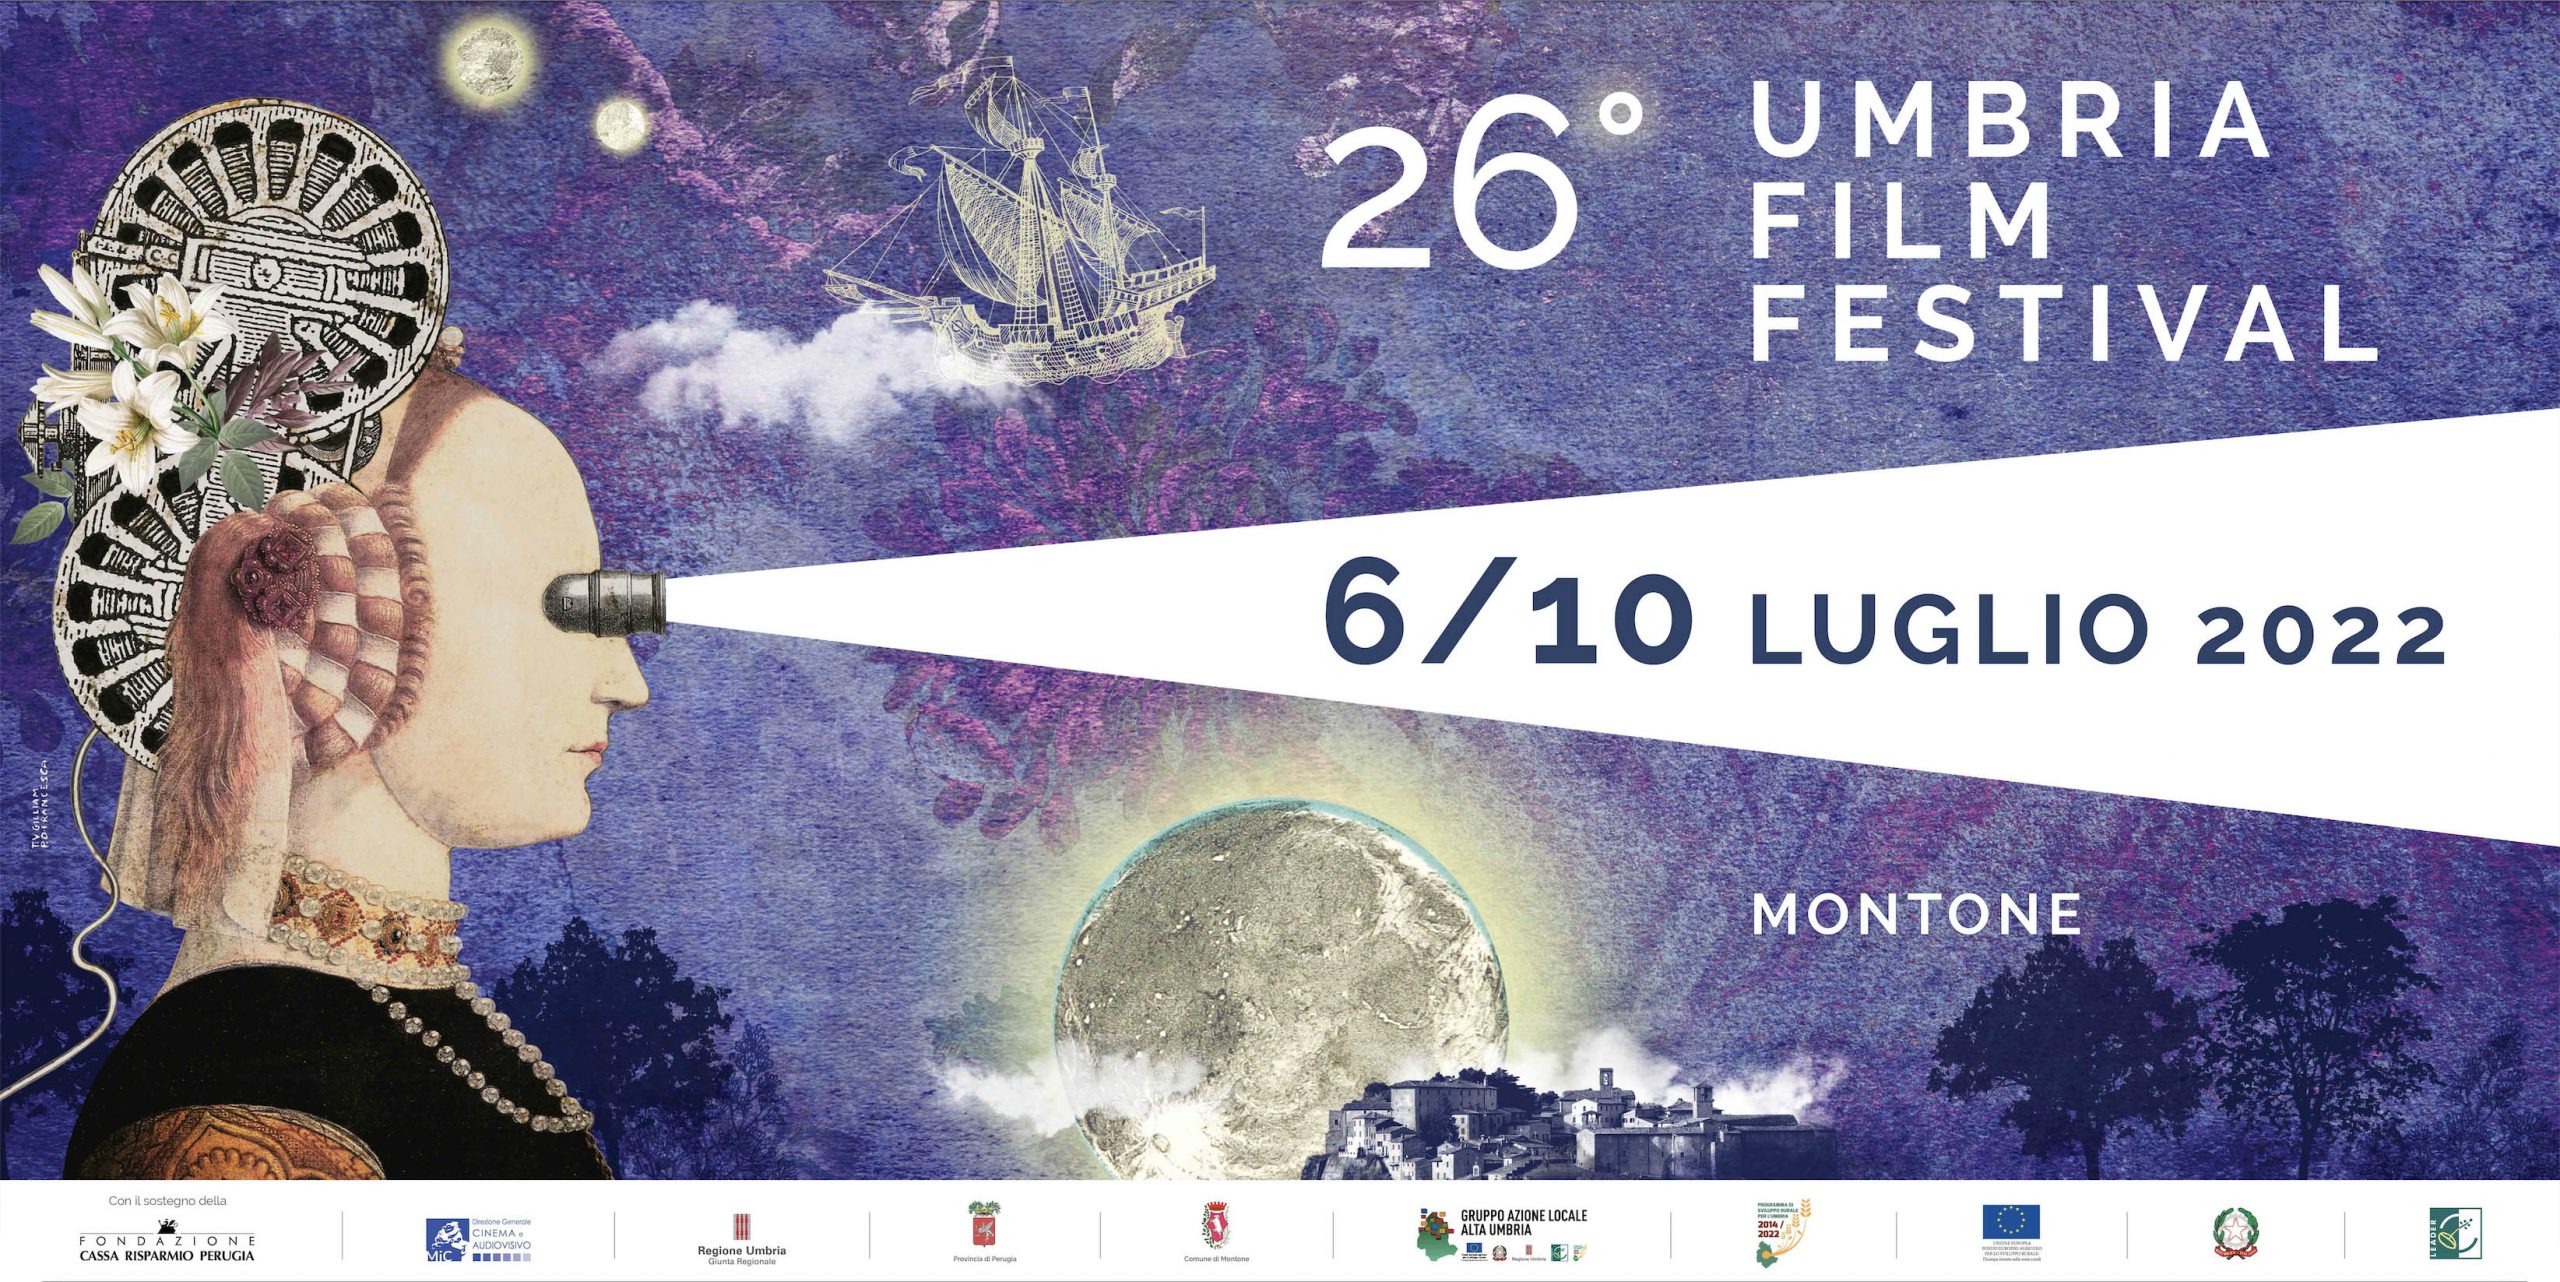 Umbria Film Festival 2022